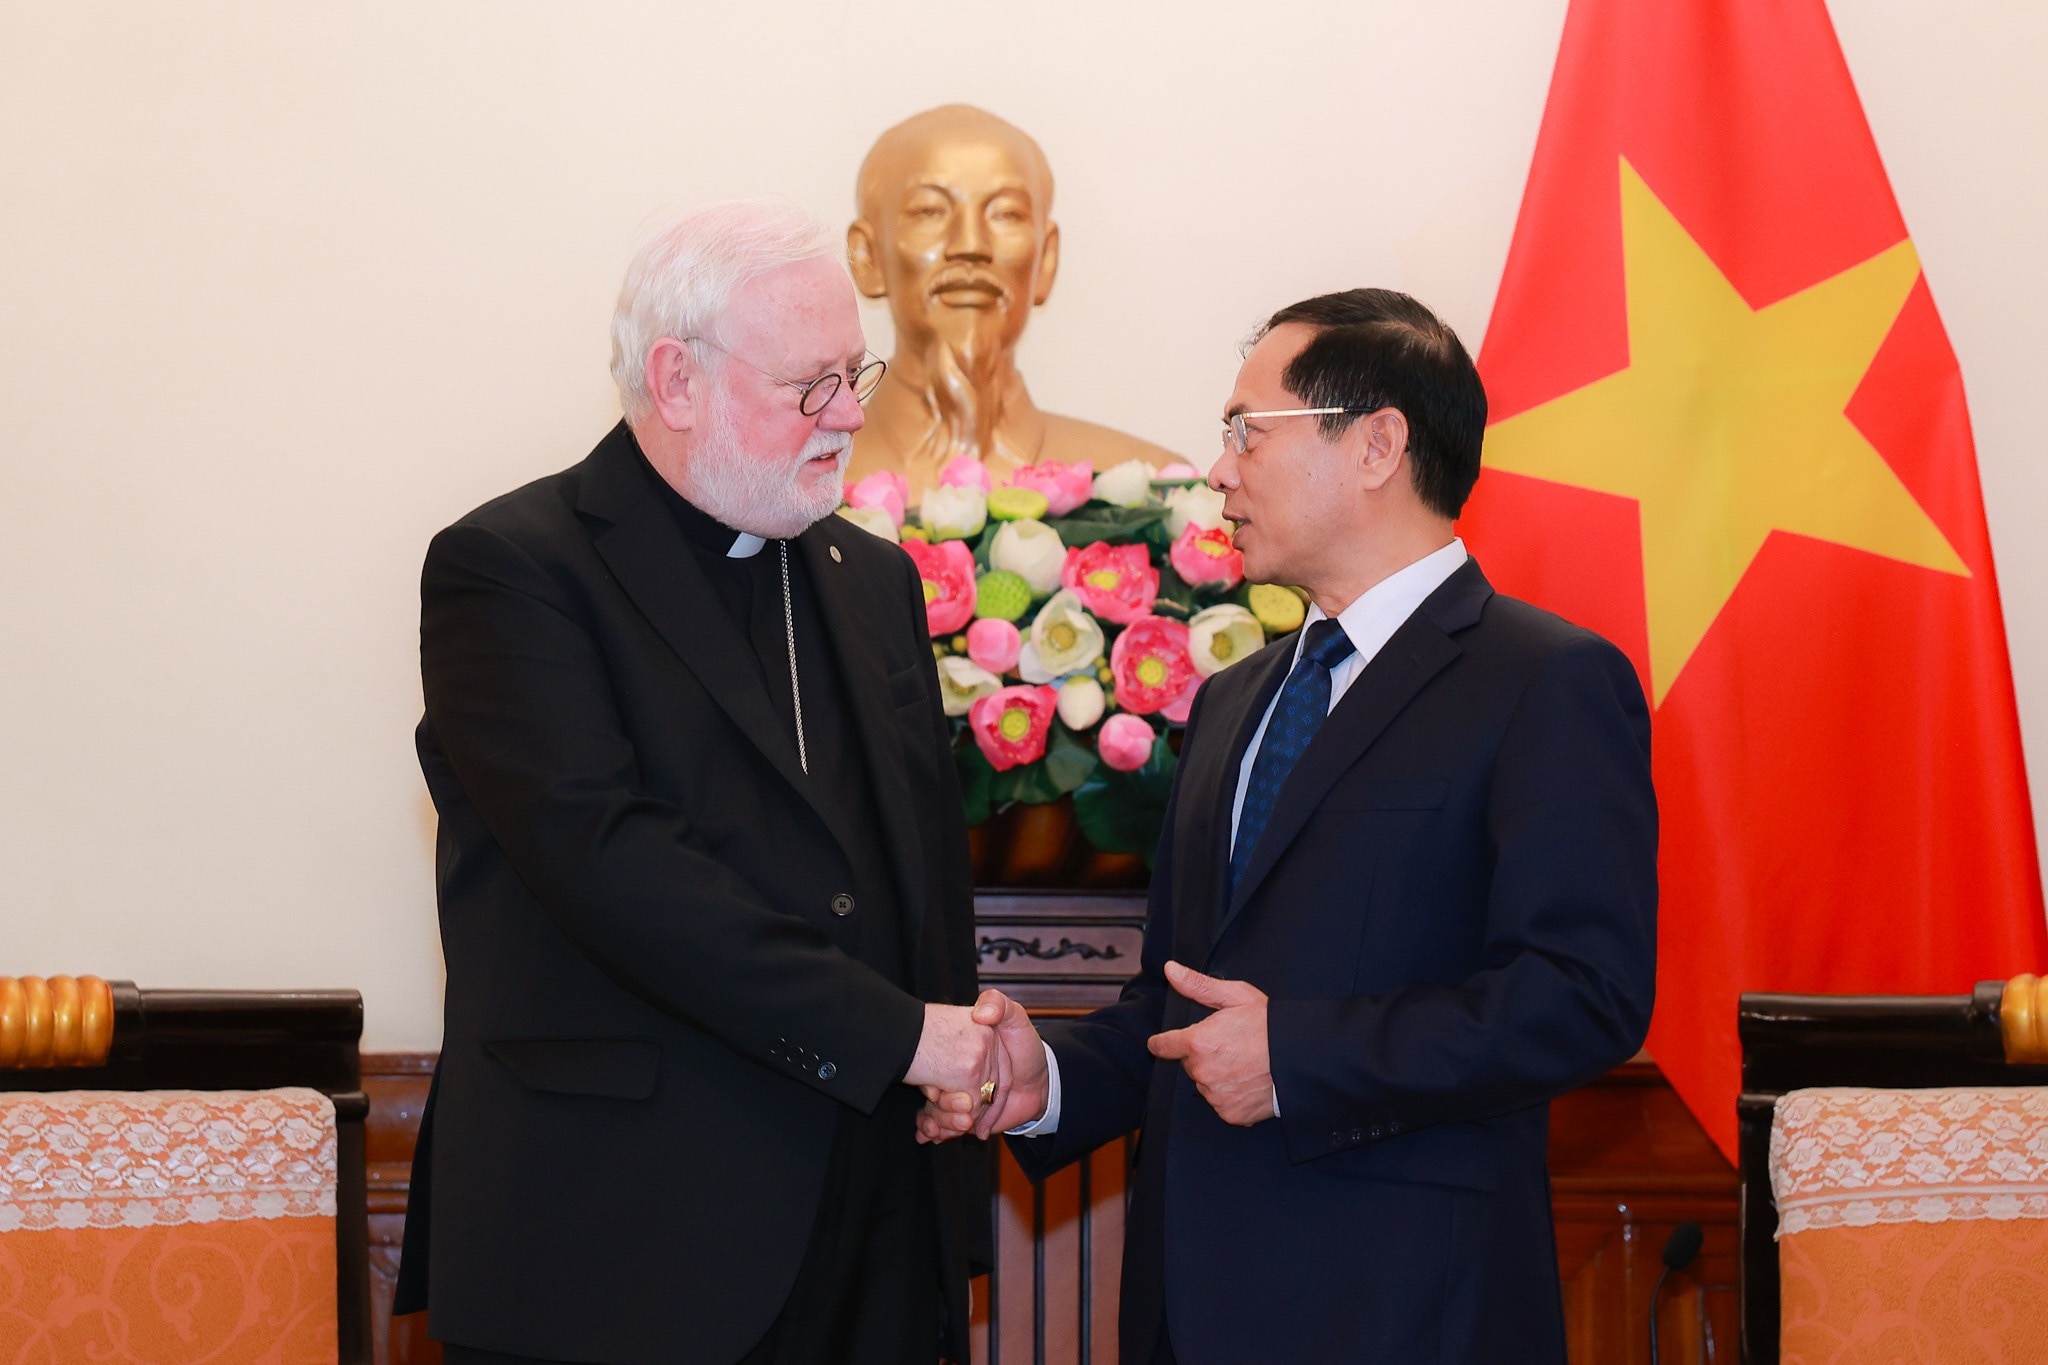 ブイ・タイン・ソン大臣は、今回の訪問がベトナムとバチカンの良好な関係促進に貢献すると信じている。写真: ハイ・グエン